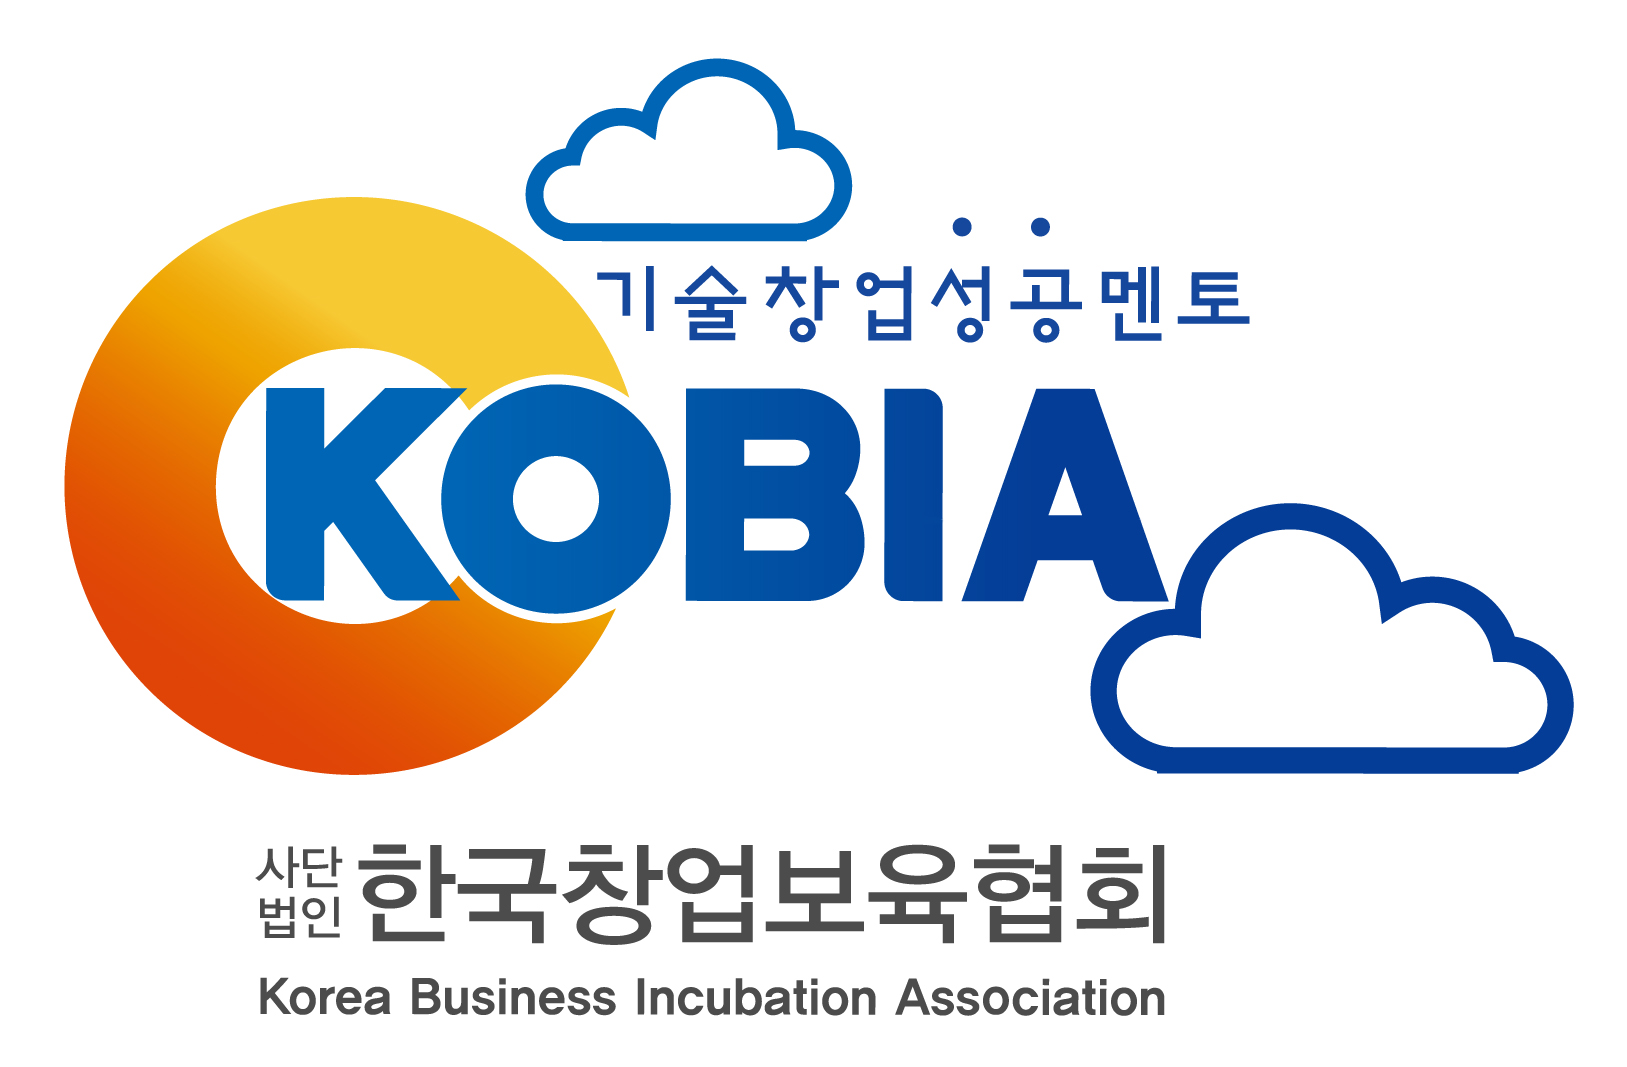 (사)한국창업보육협회의 기업로고